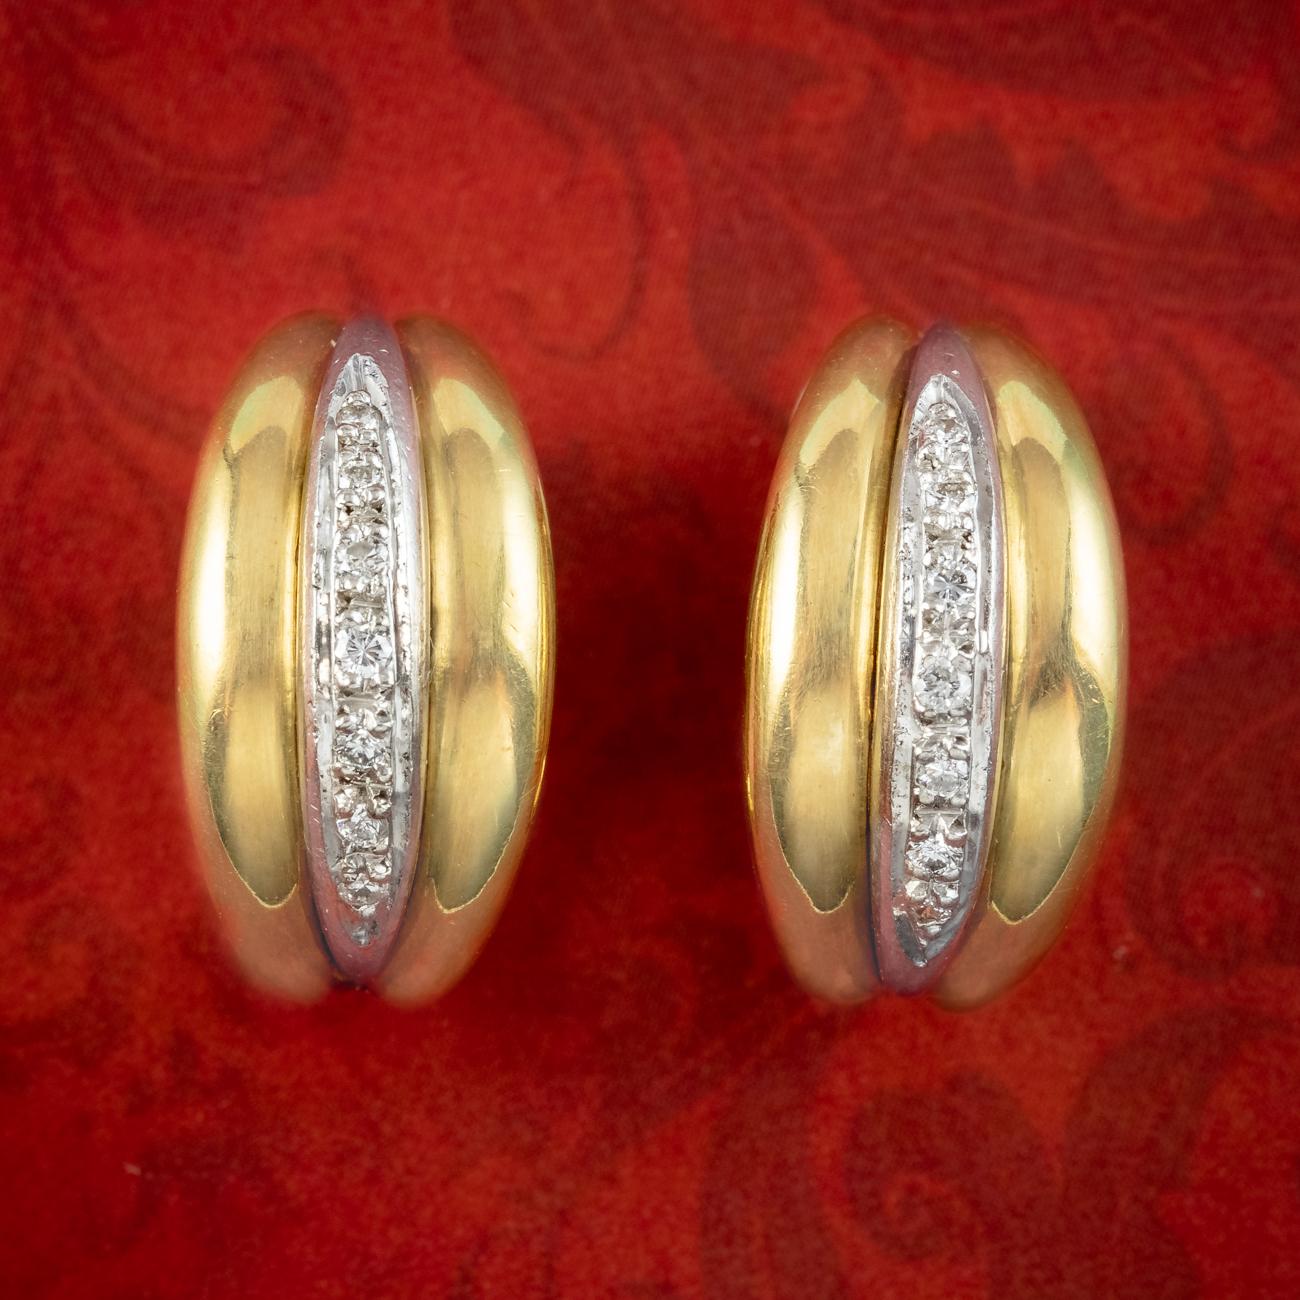 Une paire chic de demi-boucles d'oreilles bicolores de la fin du 20e siècle composée de deux bandes d'or jaune et d'une bande d'or blanc au centre, bordée de diamants brillants scintillants le long du sommet (environ 0,40ct au total).

Le diamant